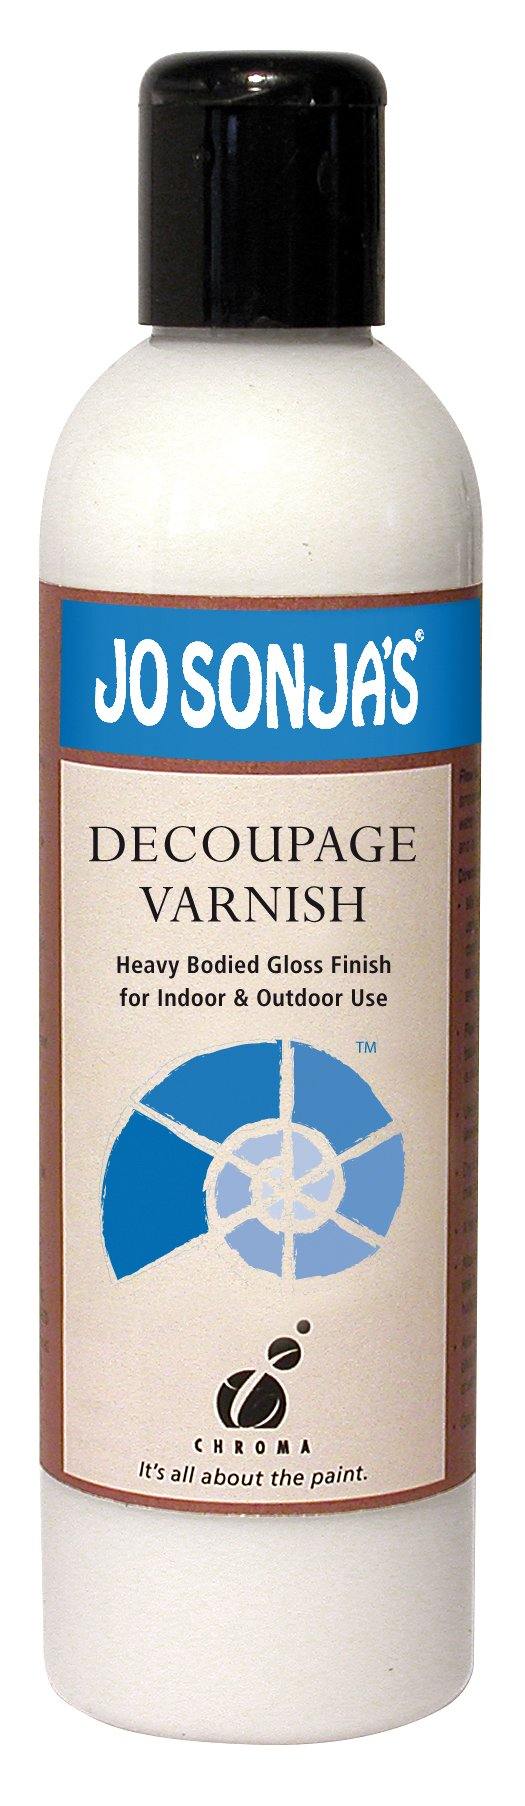 Jo Sonja's Decoupage Varnish 250ml - Art Supplies Australia